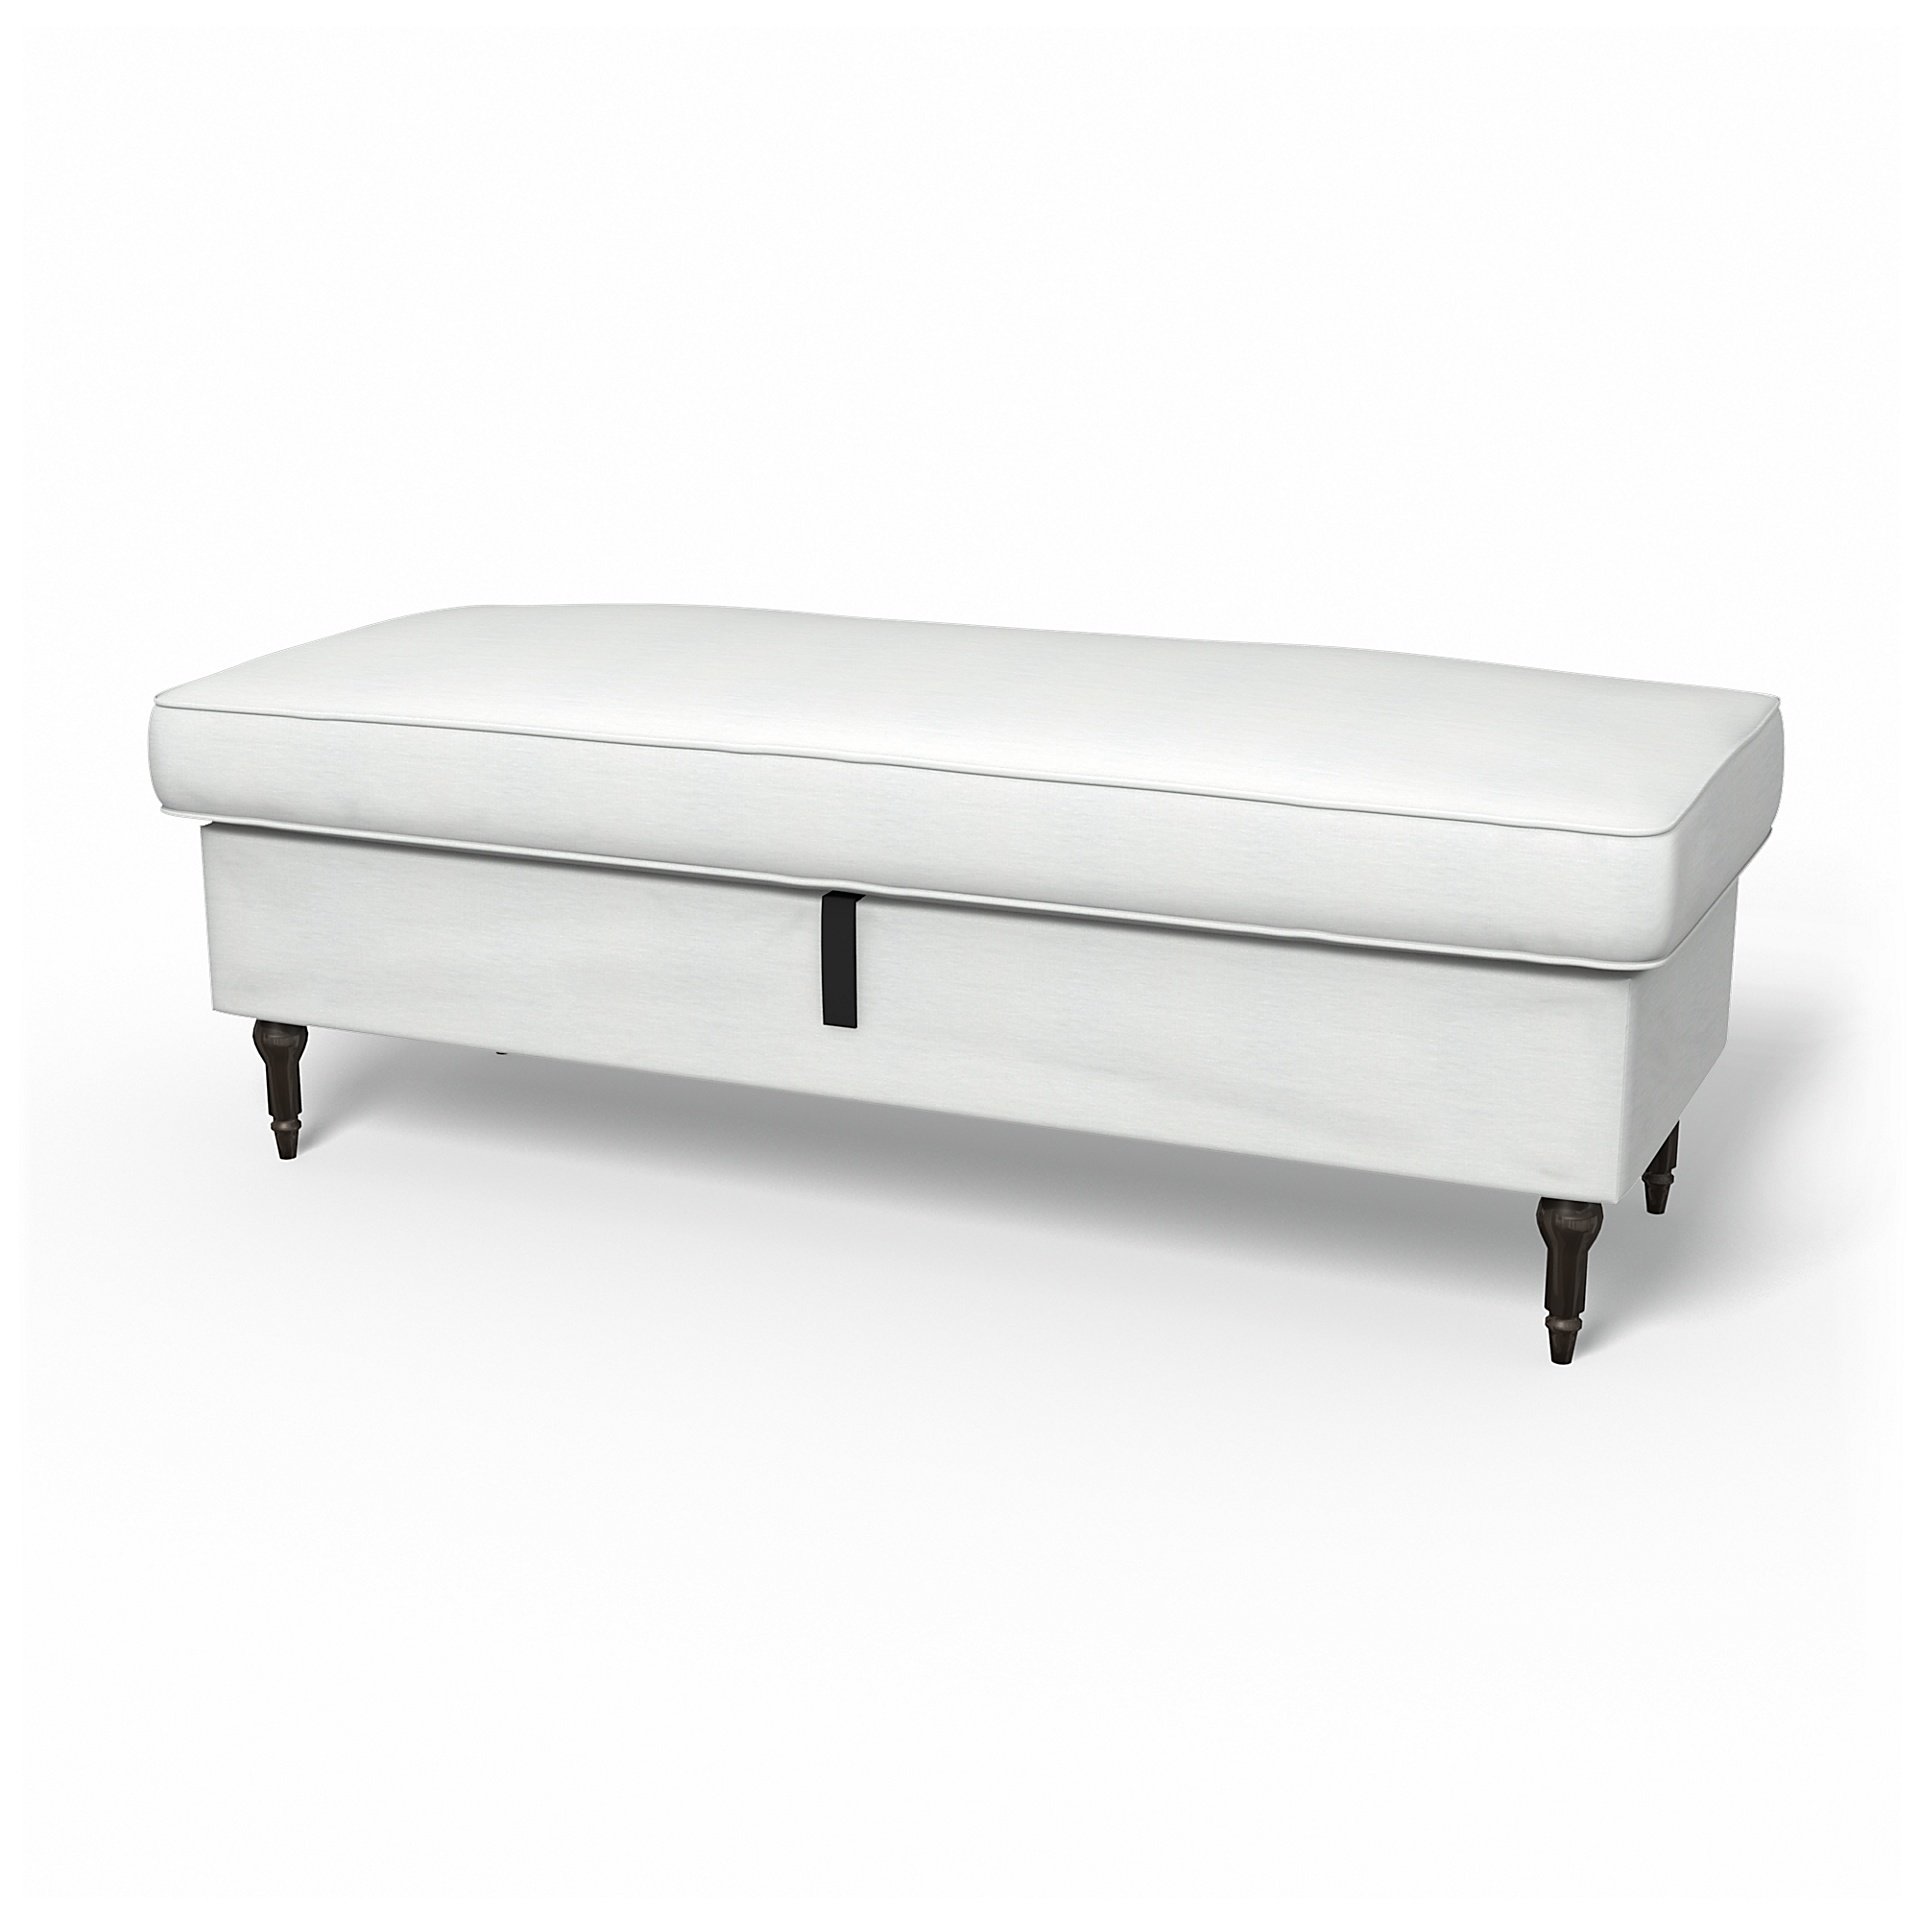 IKEA - Stocksund Bench Cover, White, Linen - Bemz